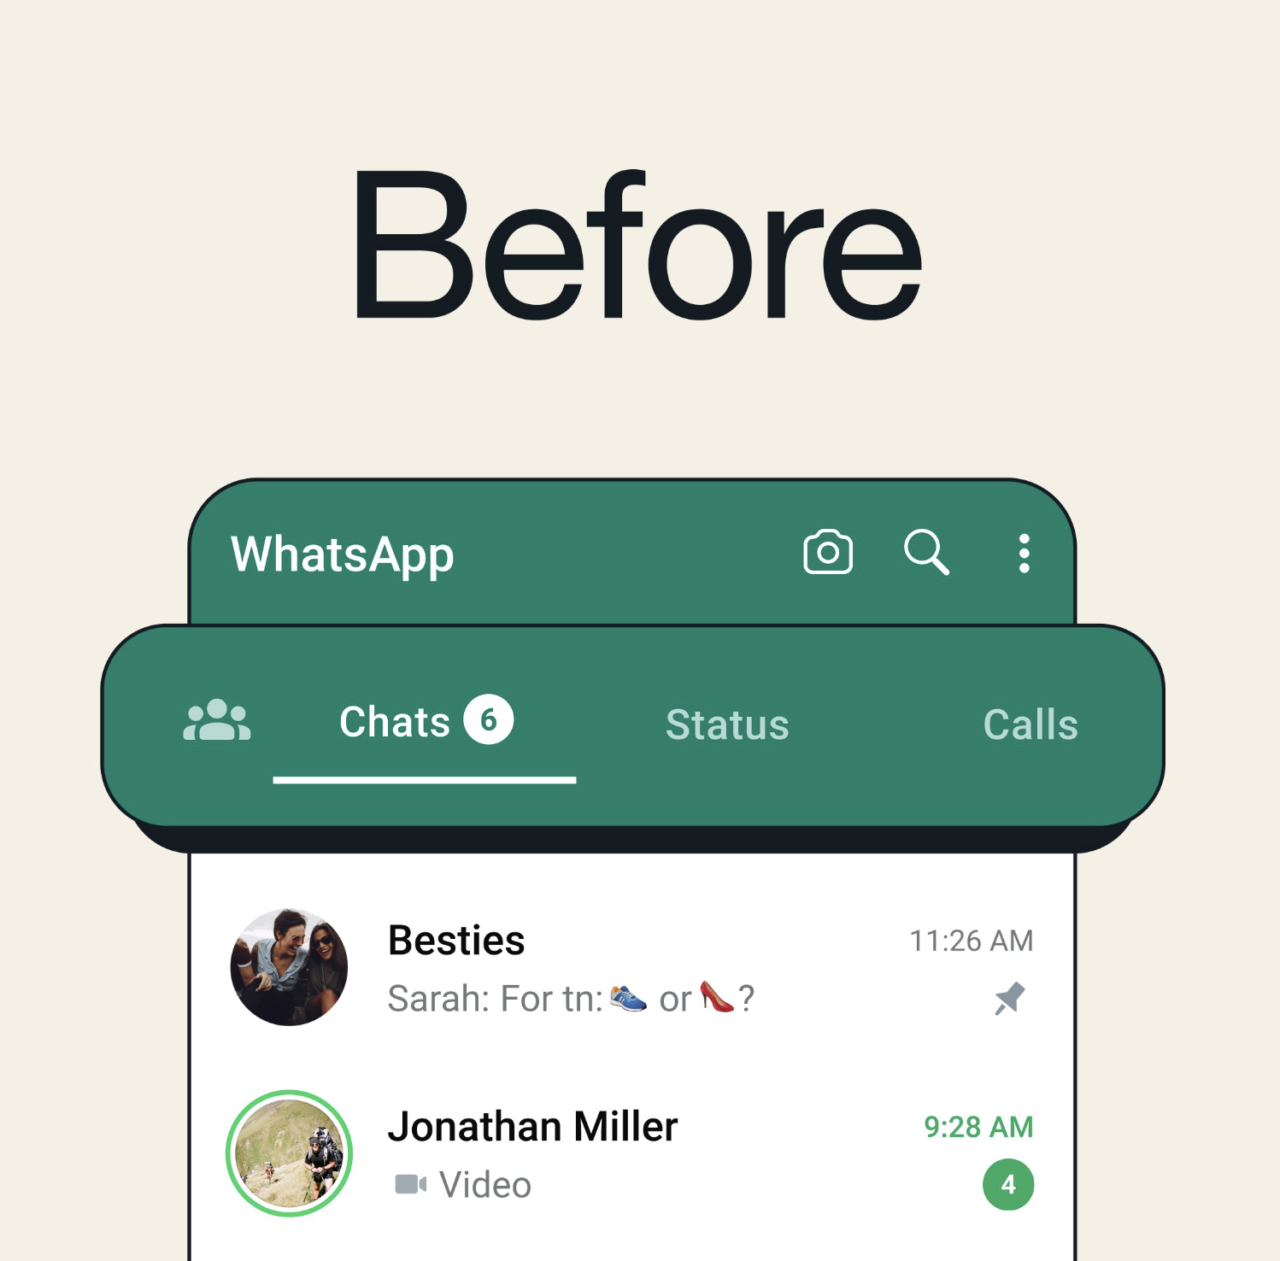 Interfejs aplikacji WhatsApp przed aktualizacją, z zaznaczonymi 6 nieprzeczytanymi wiadomościami, sekcjami Czaty, Status i Połączenia oraz dwoma widocznymi konwersacjami w sekcji Czaty.